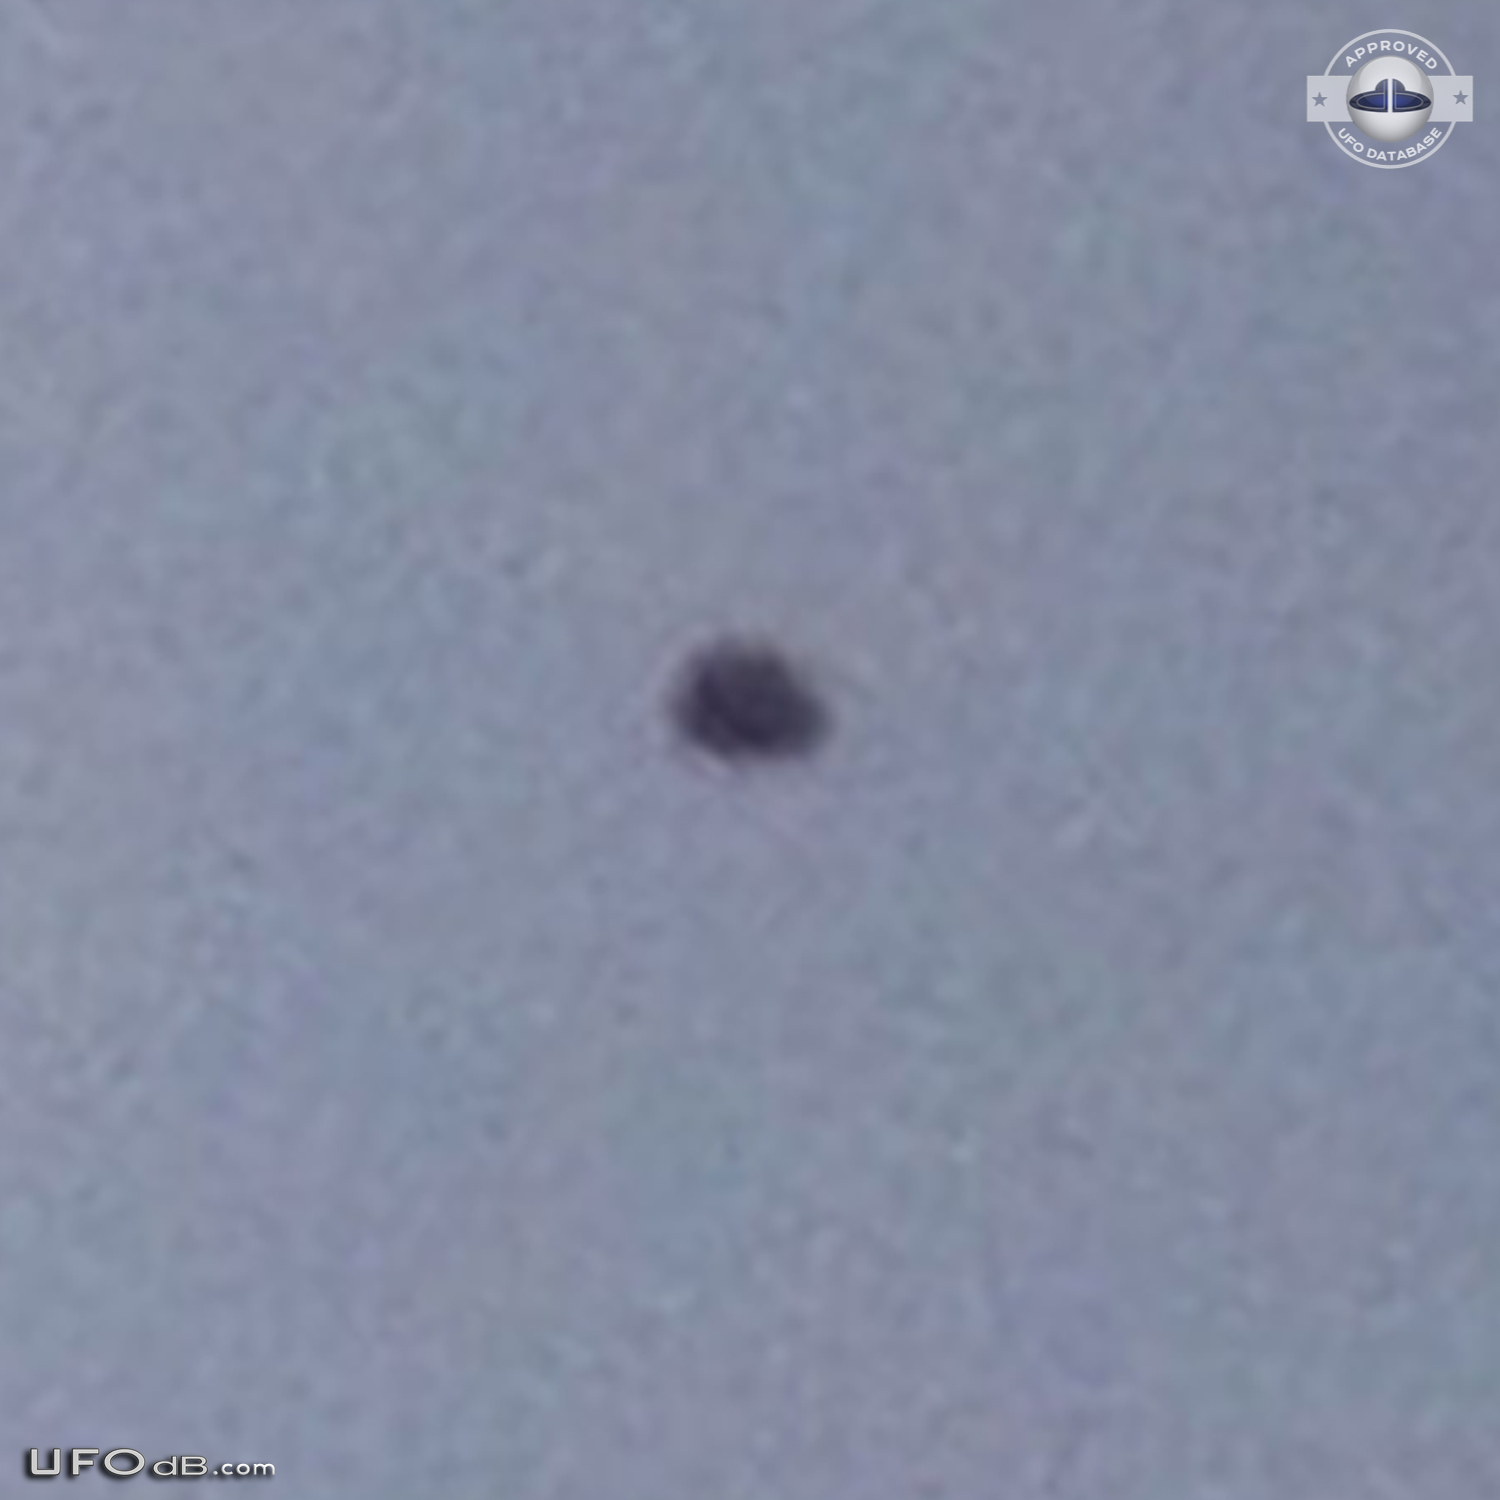 Dark UFO hovering over Rishon LeZion in Center Israel - 2012 UFO Picture #424-3